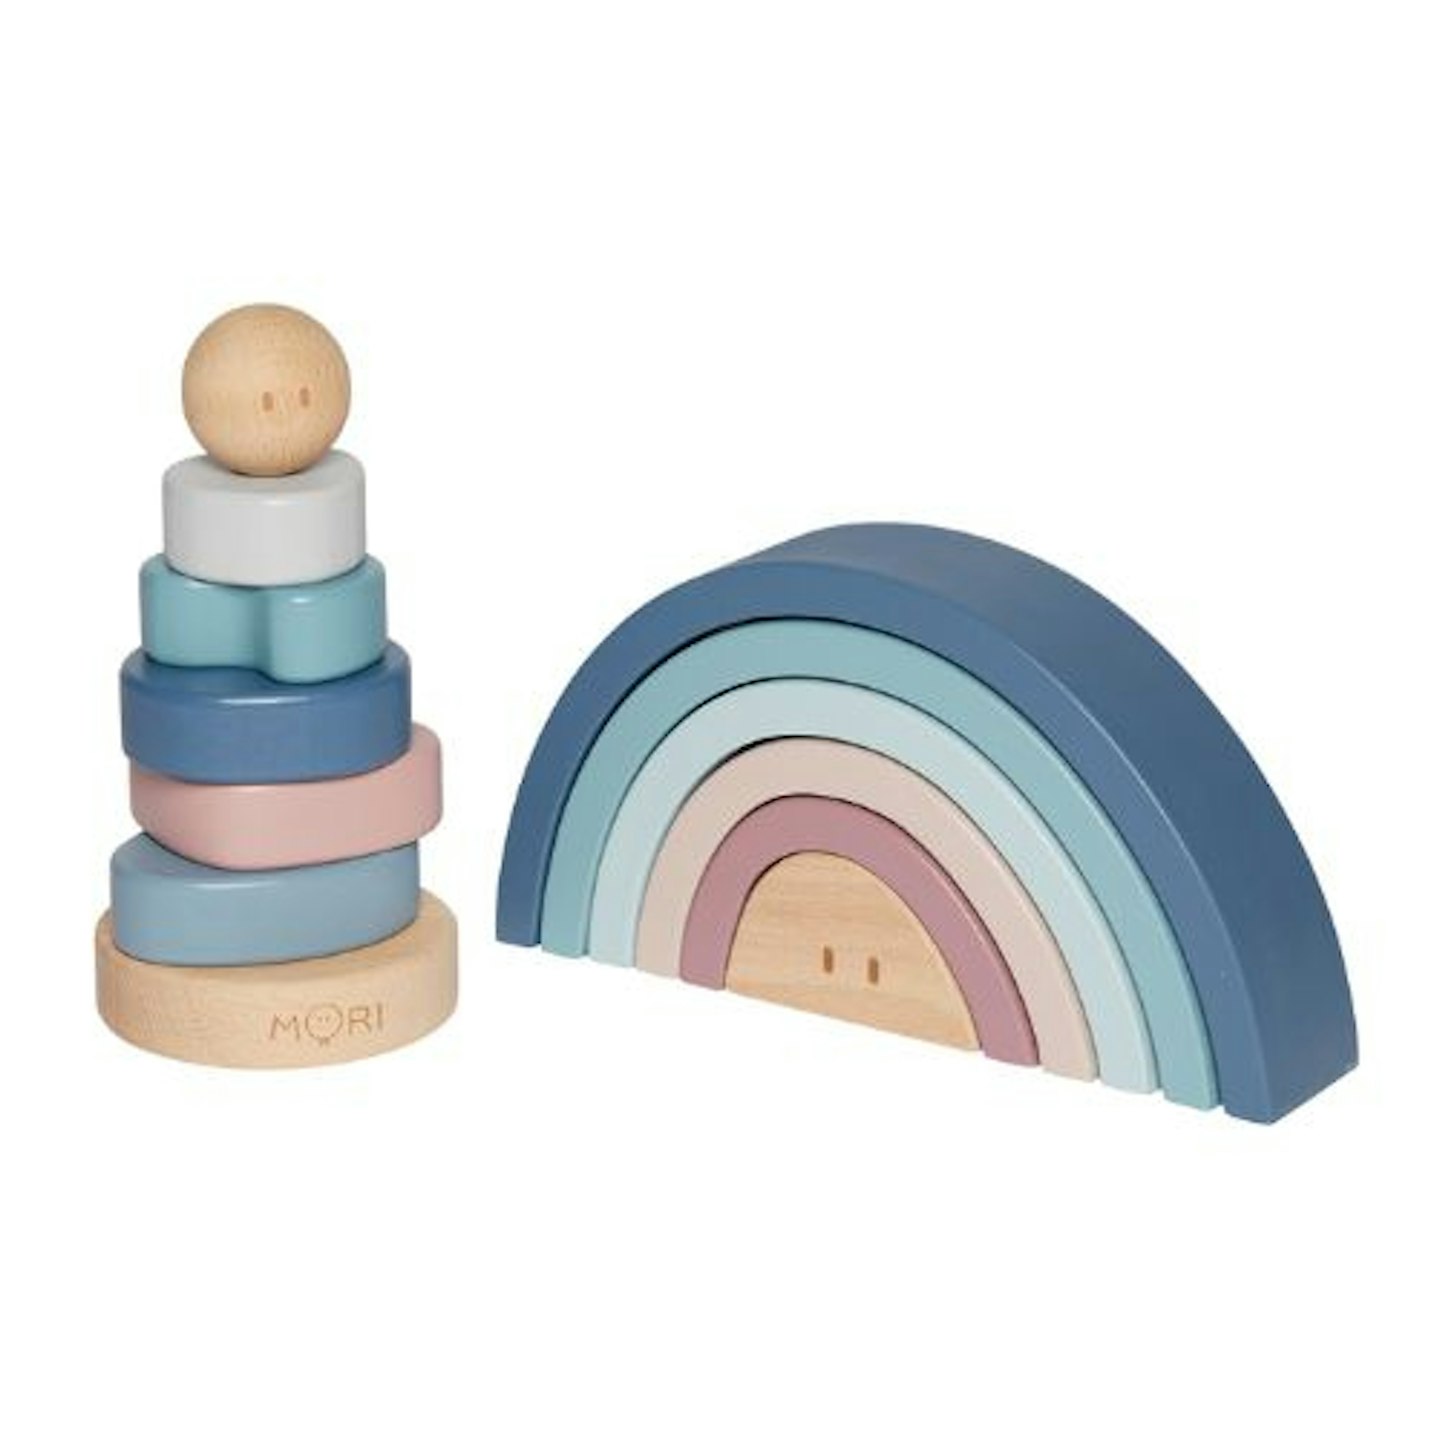 Best Children's Toy : Mori - Wooden Baby Toys Gift Set